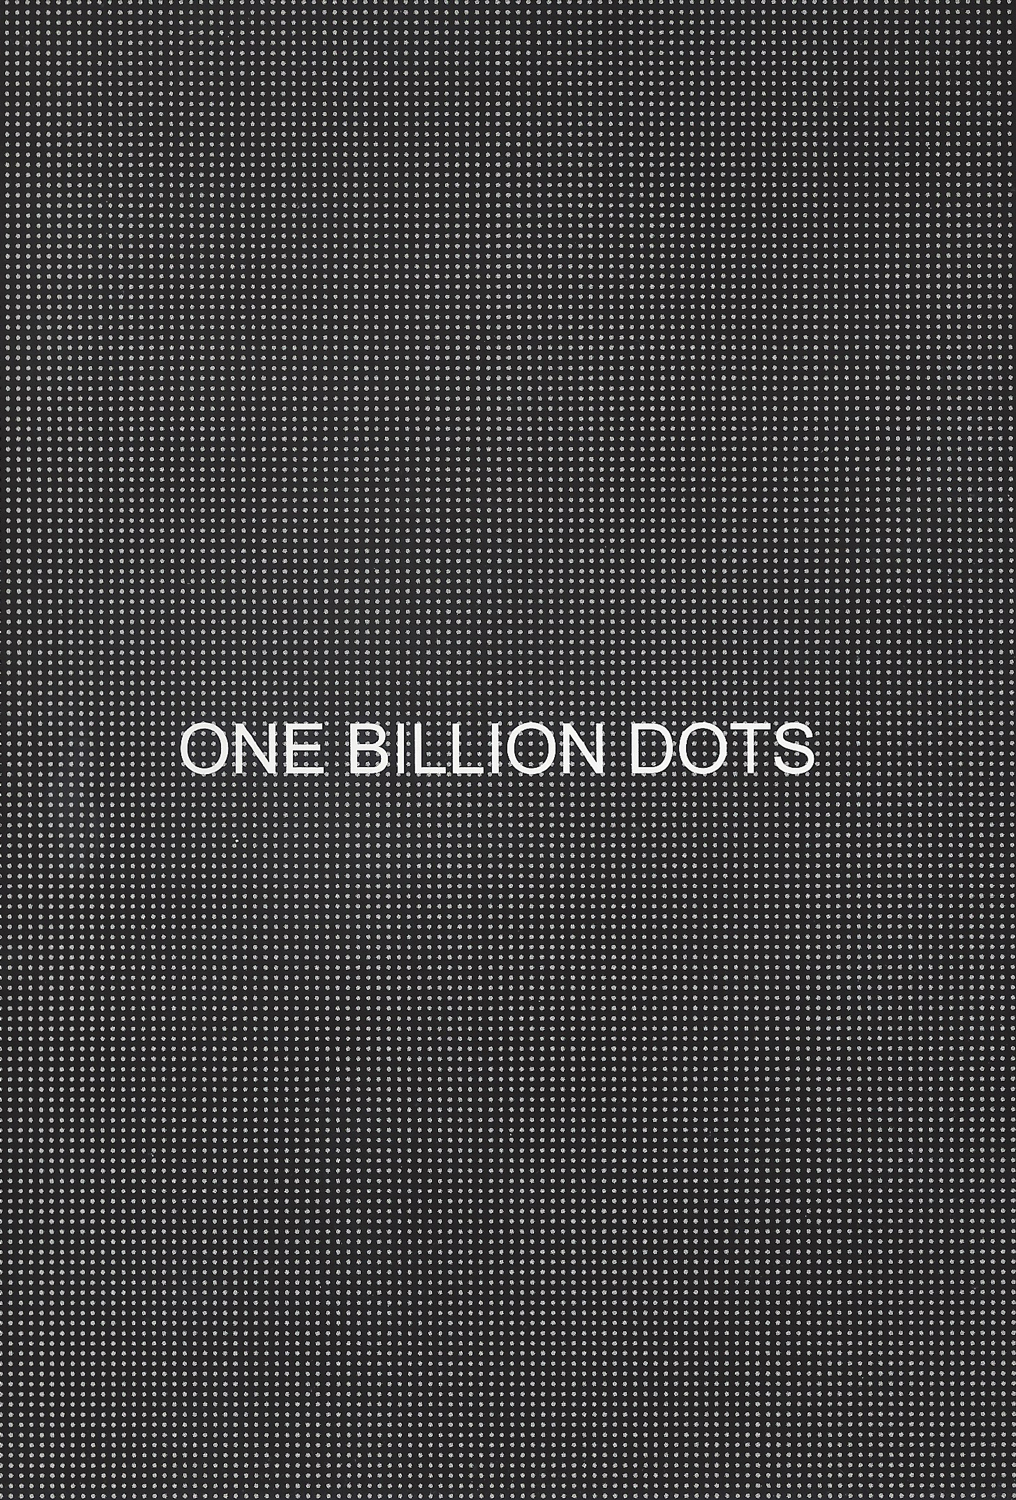 robert-barry-one-billion-dots-2008